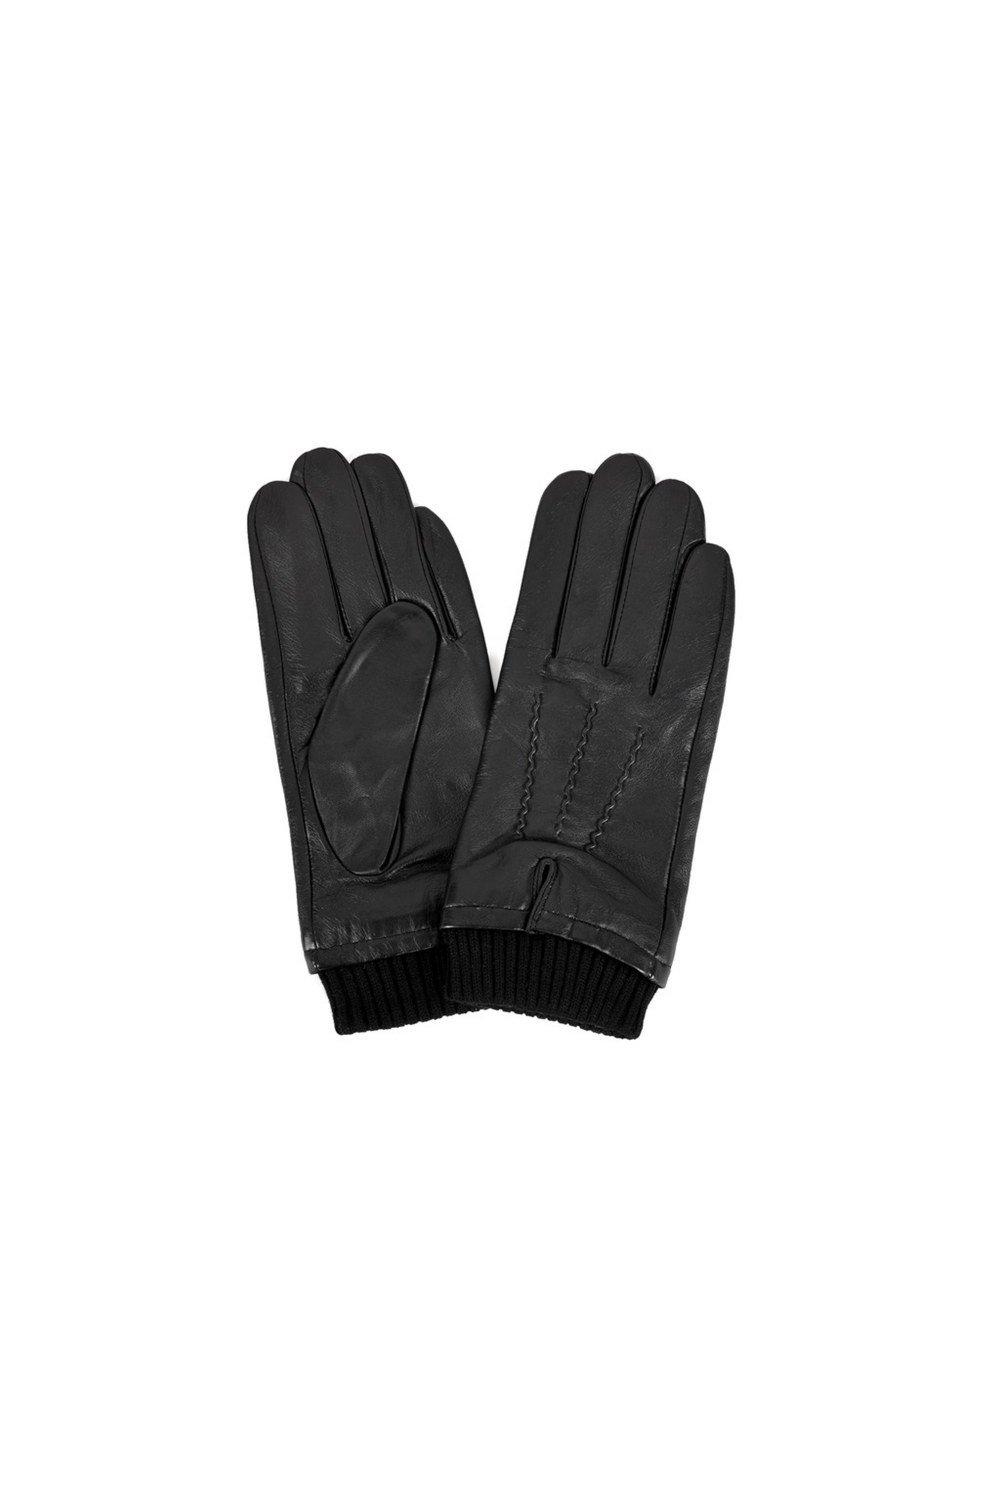 Перчатки с ребристыми манжетами Eastern Counties Leather, черный 1 пара кожаные рабочие перчатки класса премиум